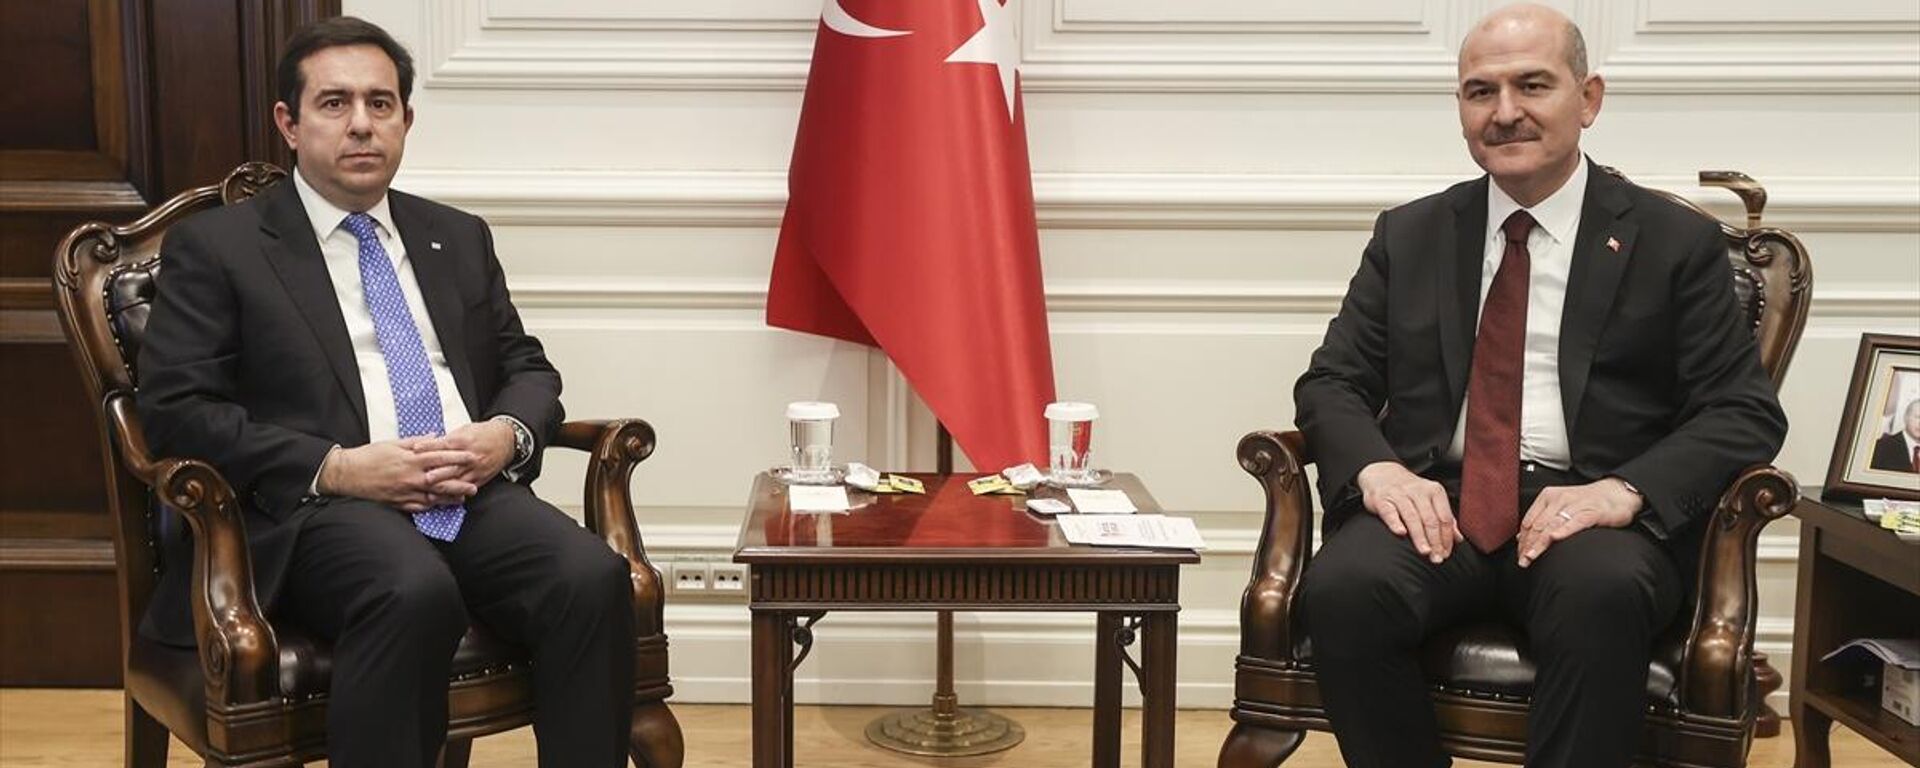 İçişleri Bakanı Soylu, Yunanistan Göç ve İltica Bakanı Mitarakis ile görüştü  - Sputnik Türkiye, 1920, 02.11.2021